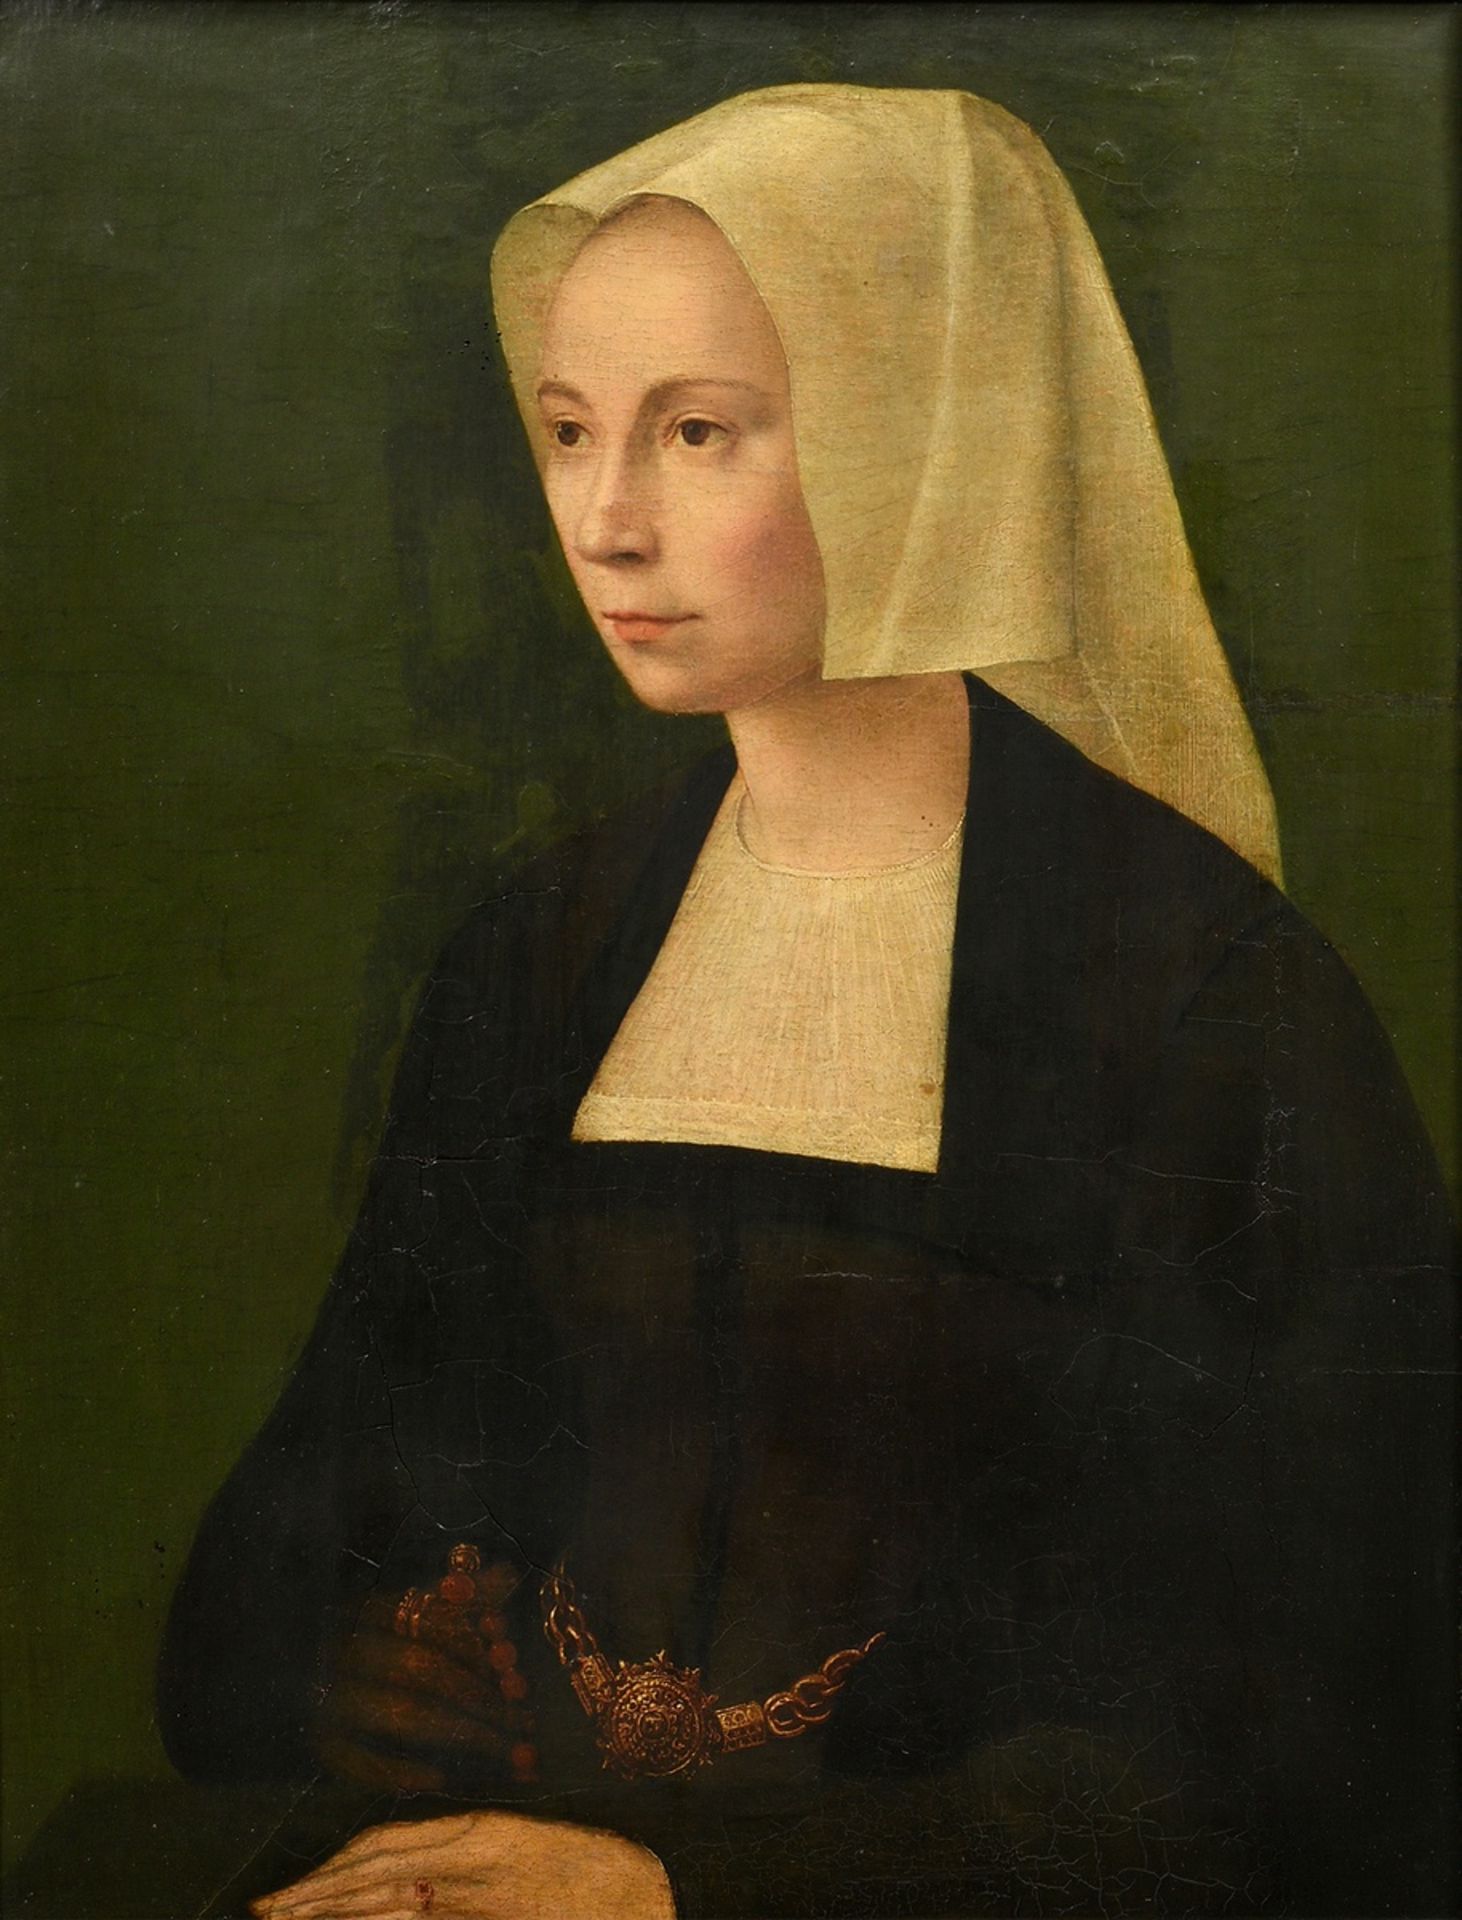 Unbekannter holländischer Meister des 16.Jh. "Portrait einer Dame mit Haube" um 1520, Öl/Holz, park